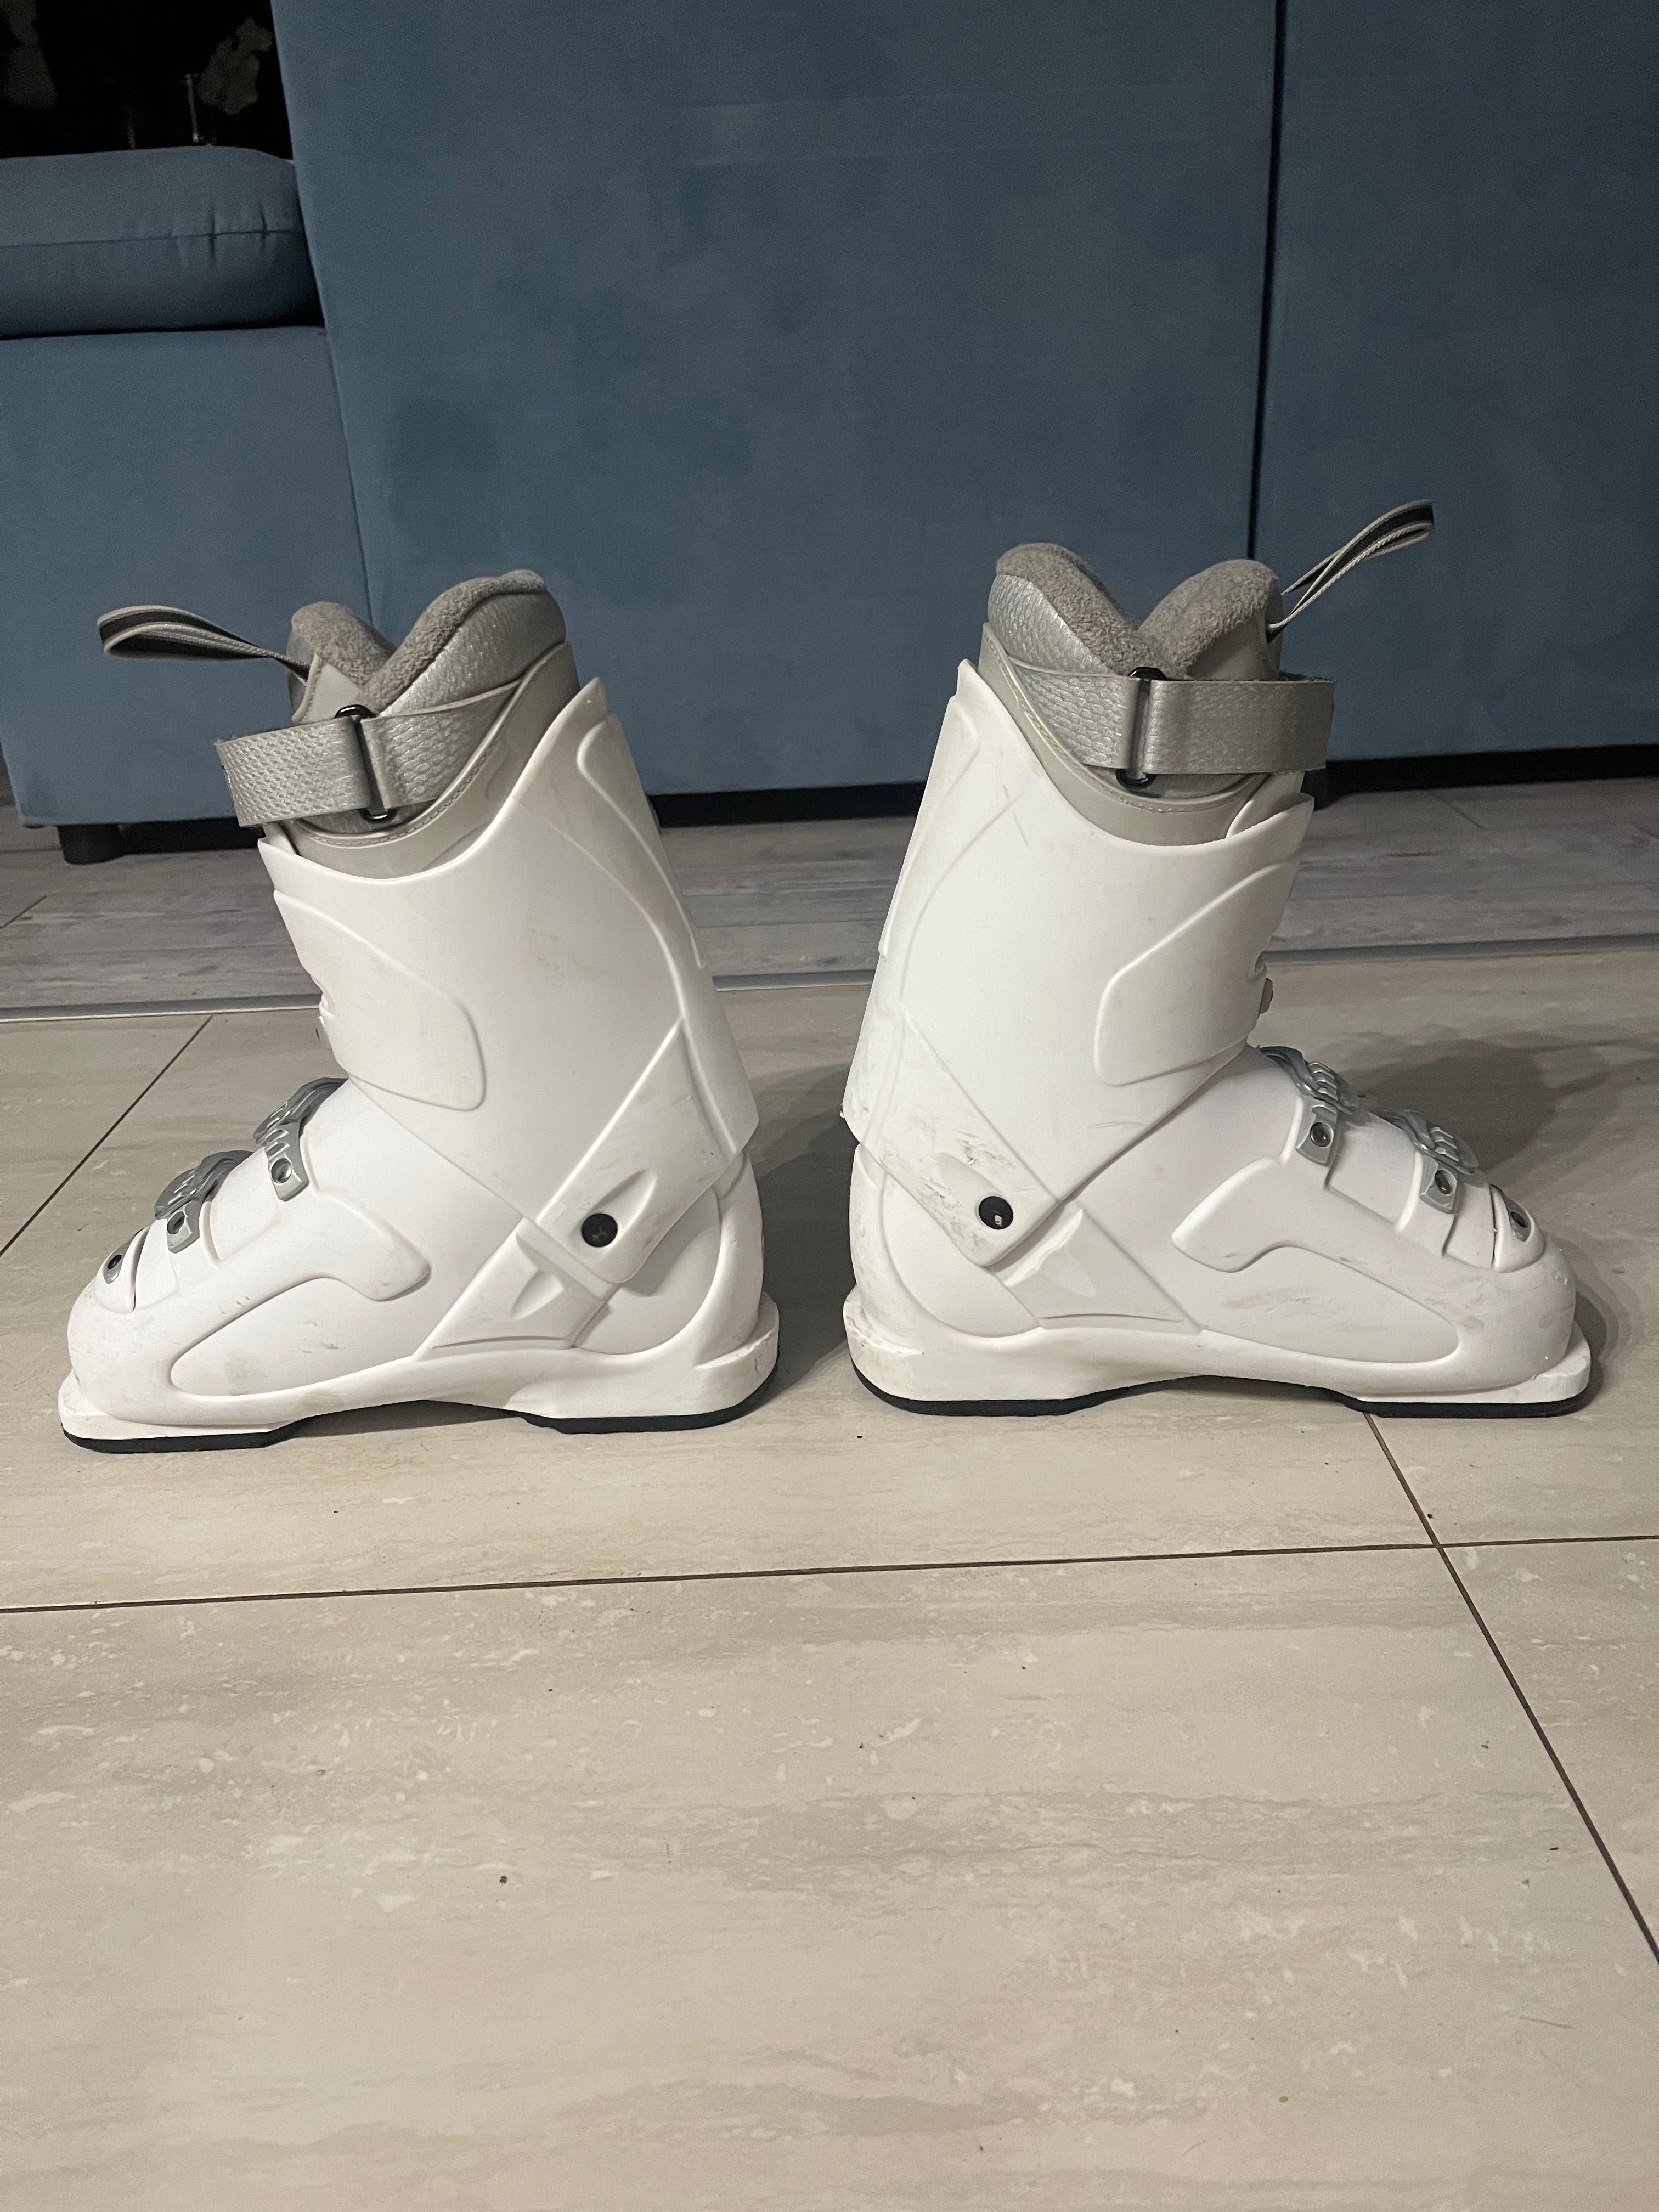 Buty narciarskie Rossignol damskie białe 24.5, 285 mm